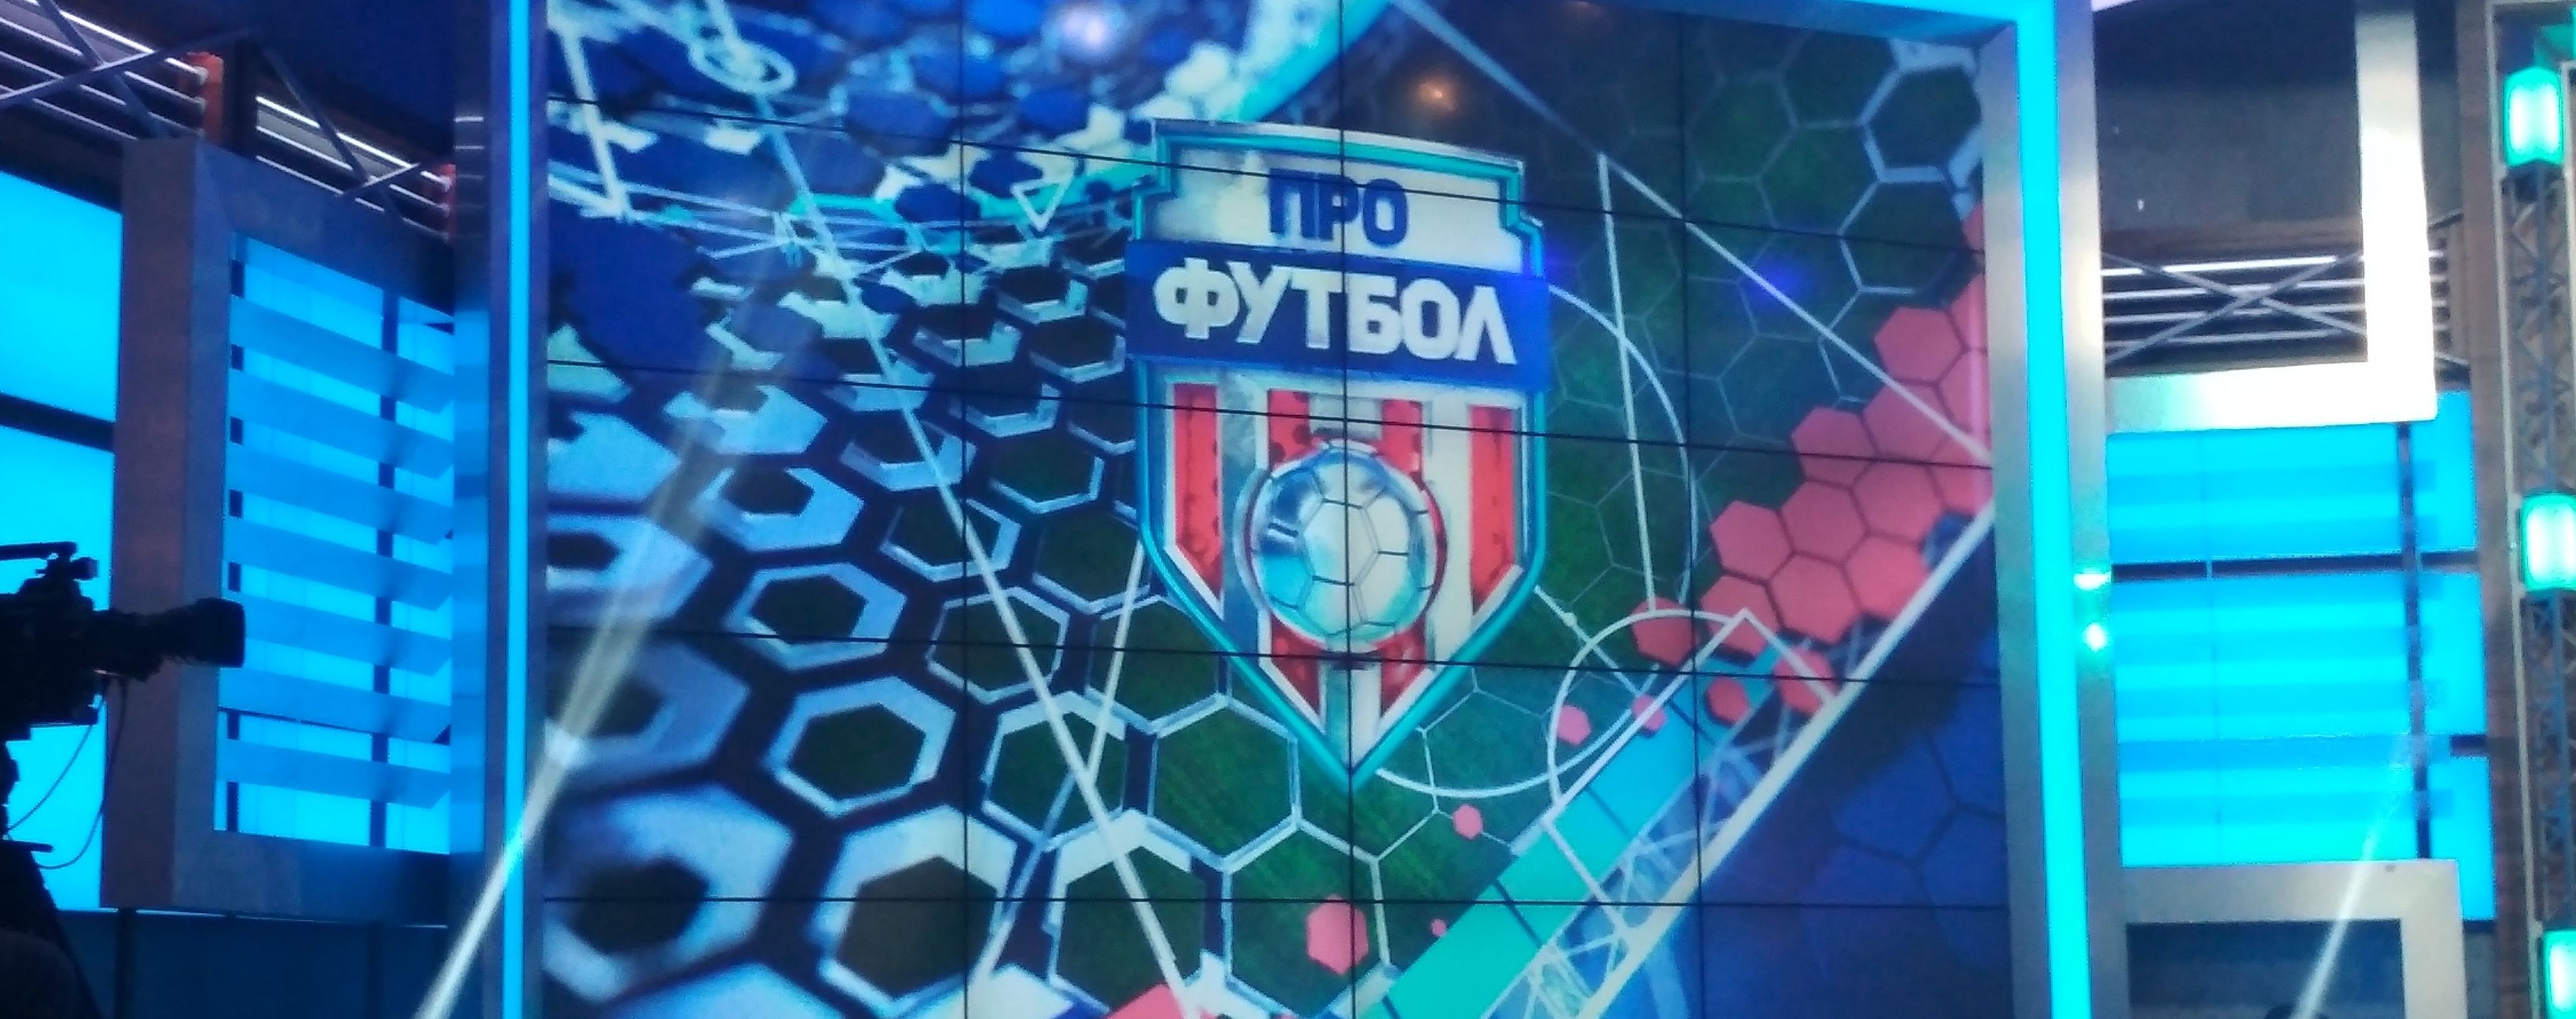 Смотри в "Профутболе": судейские скандалы, ставки на матчи и гость программы Александр Алиев